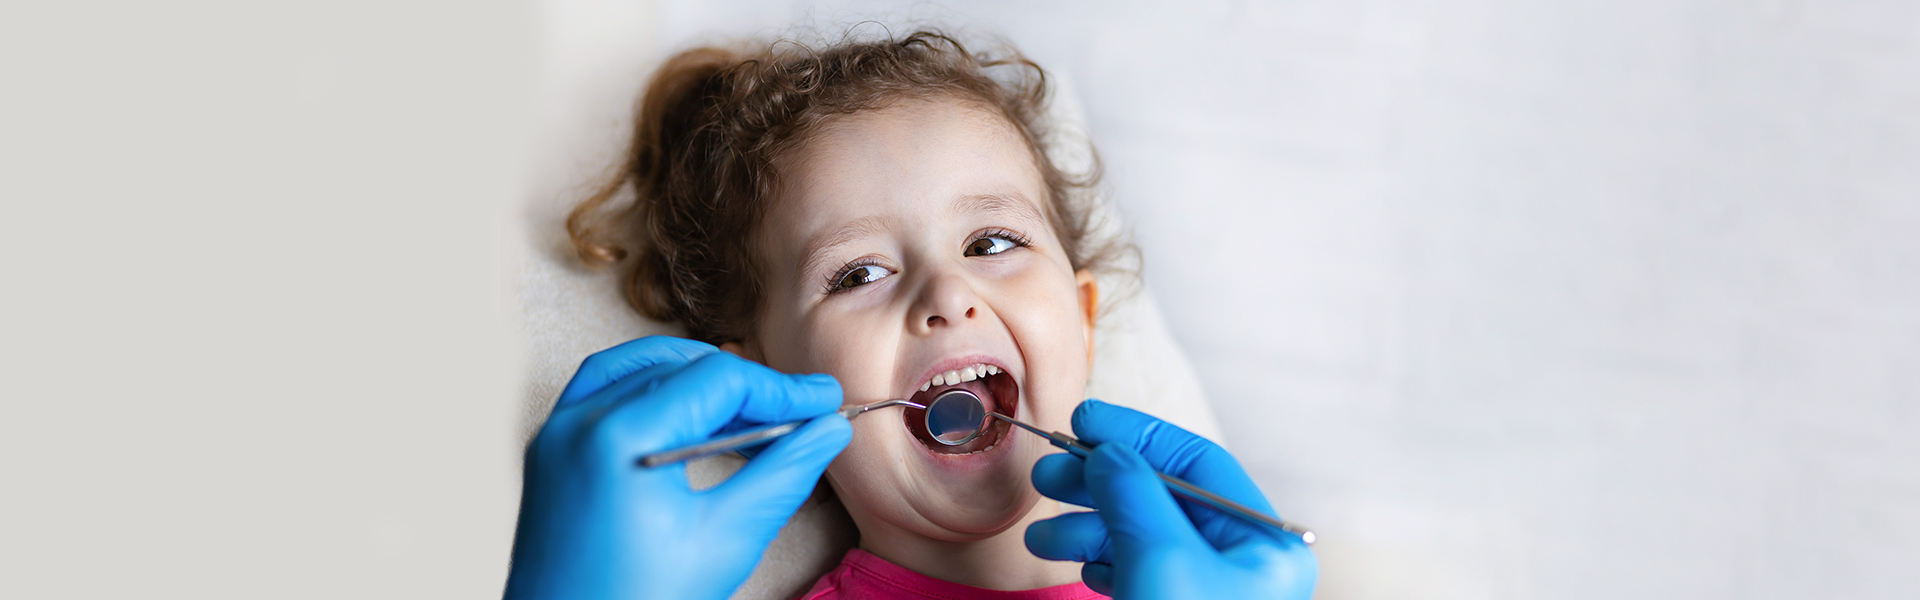 Pediatric Dentistry in Wenatchee, WA